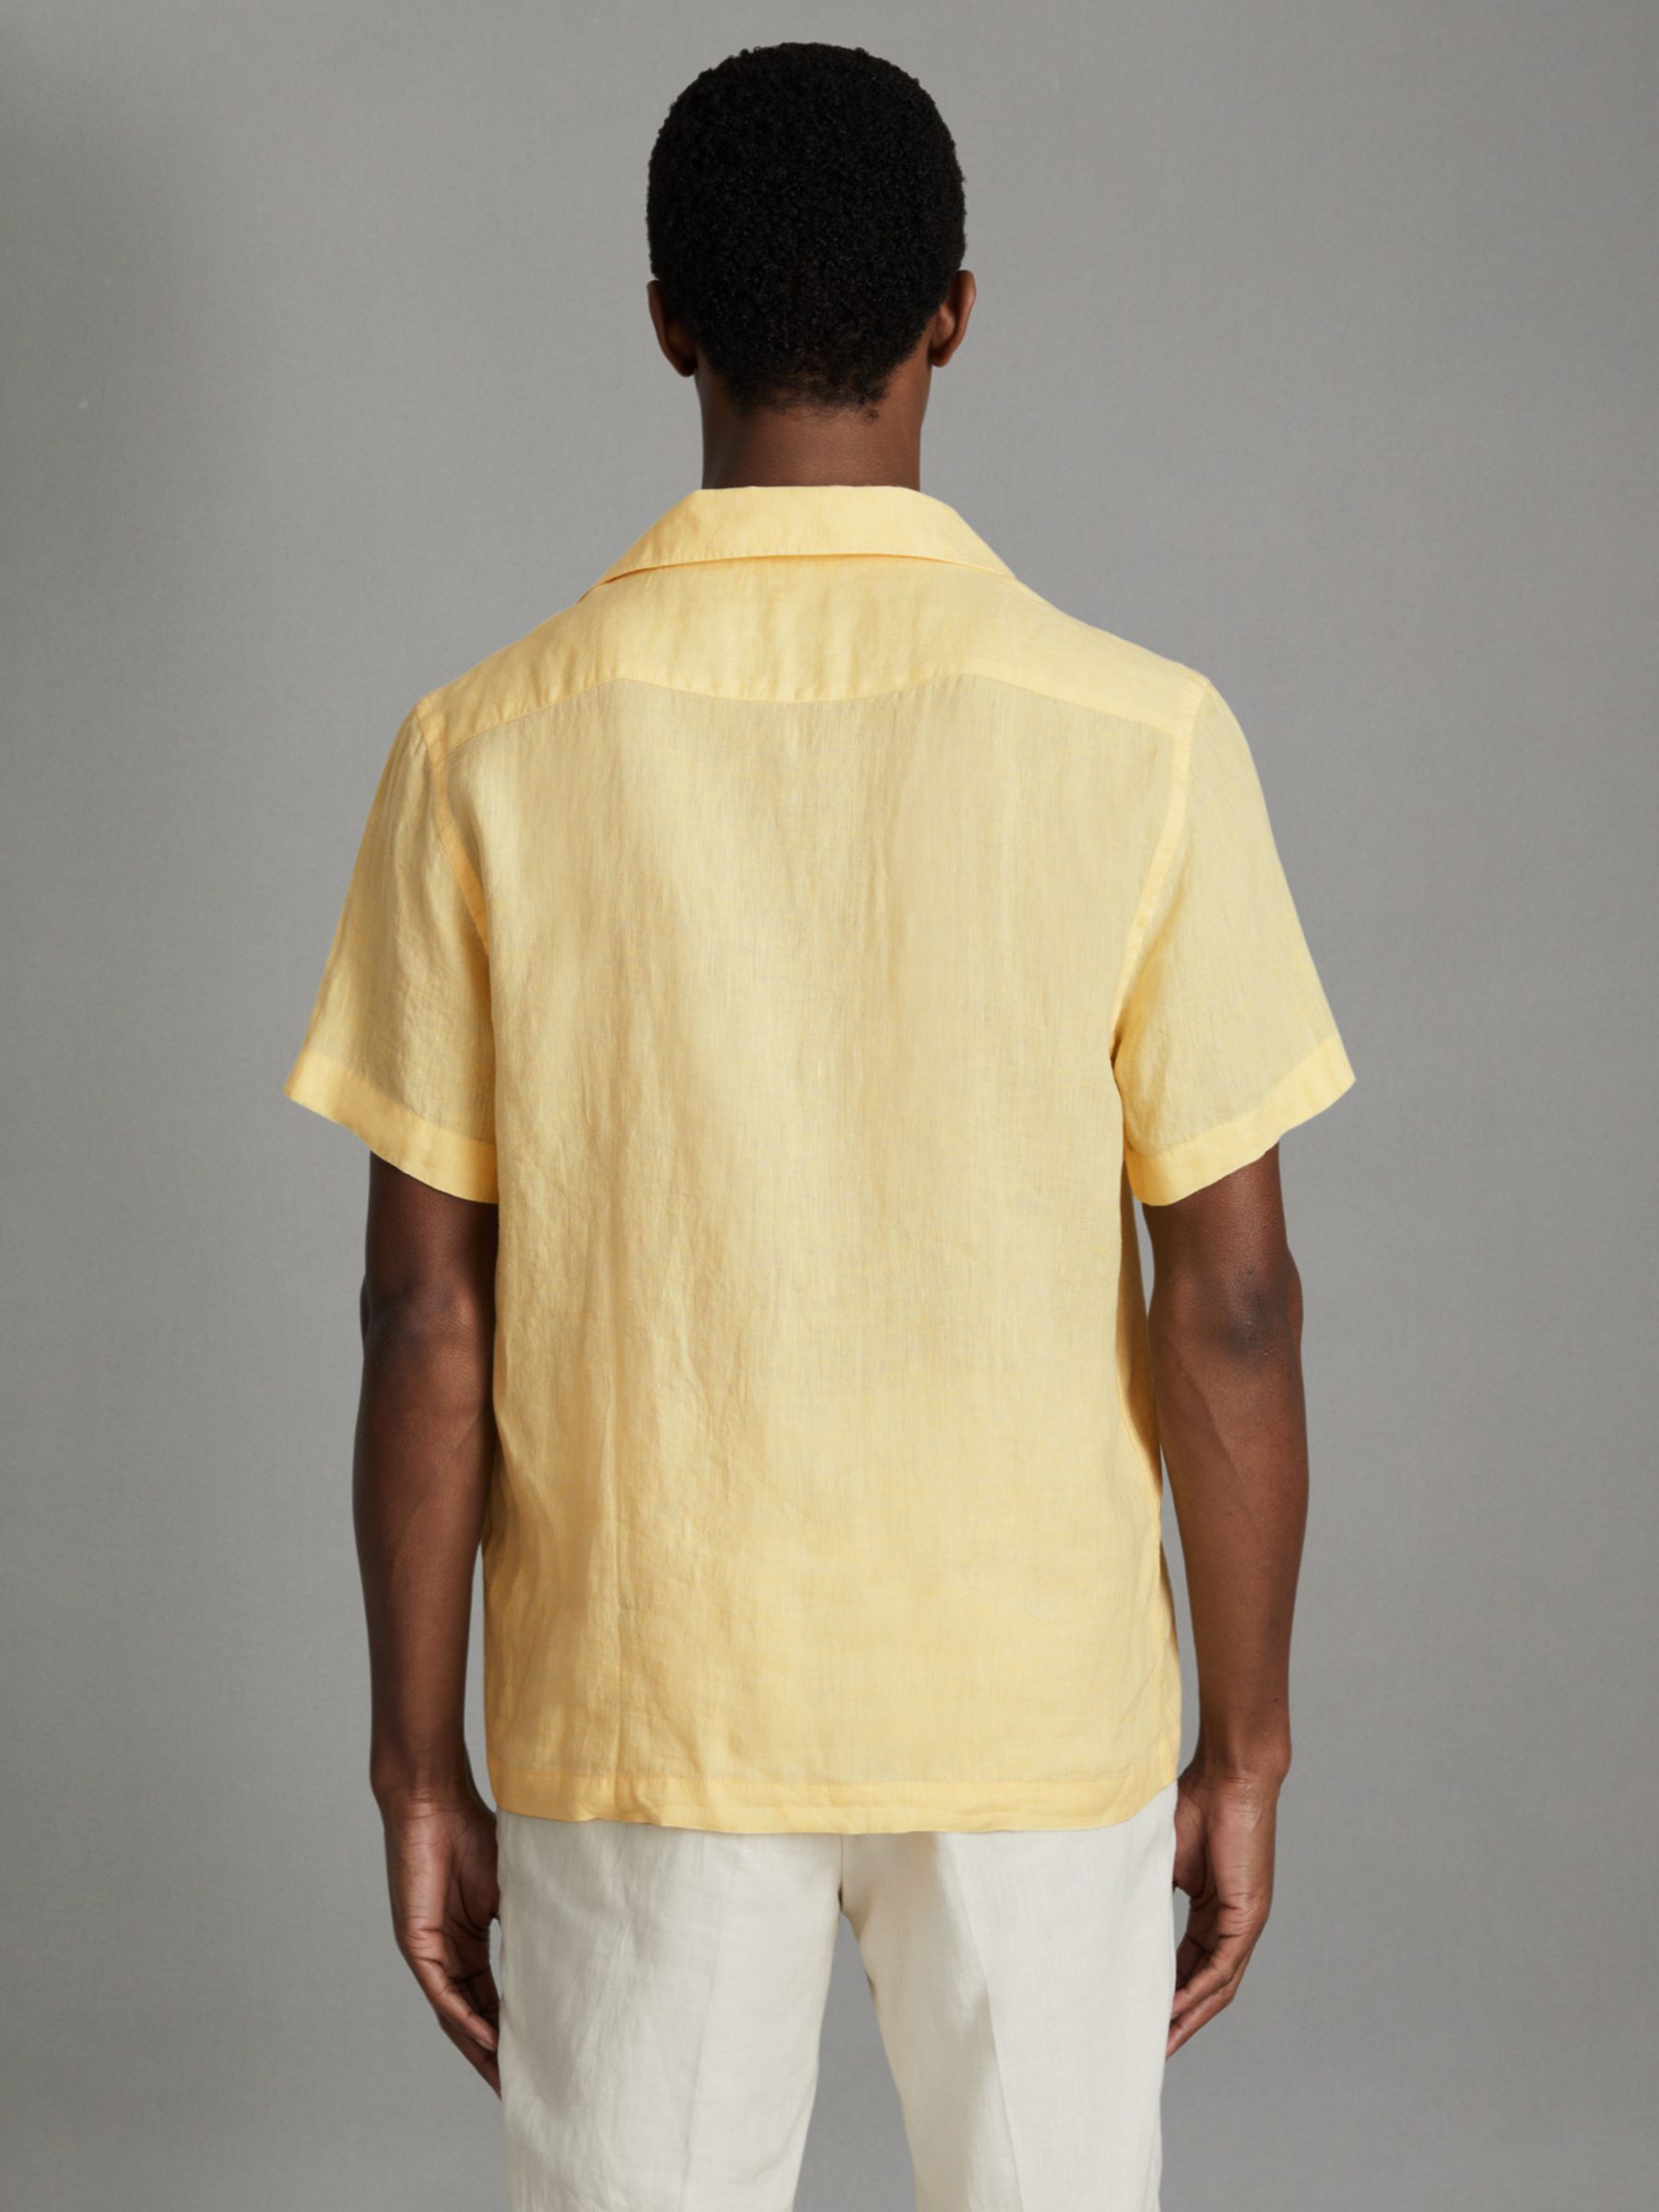 Buy Reiss Beldi Linen Short Sleeve Cuban Shirt Online at johnlewis.com